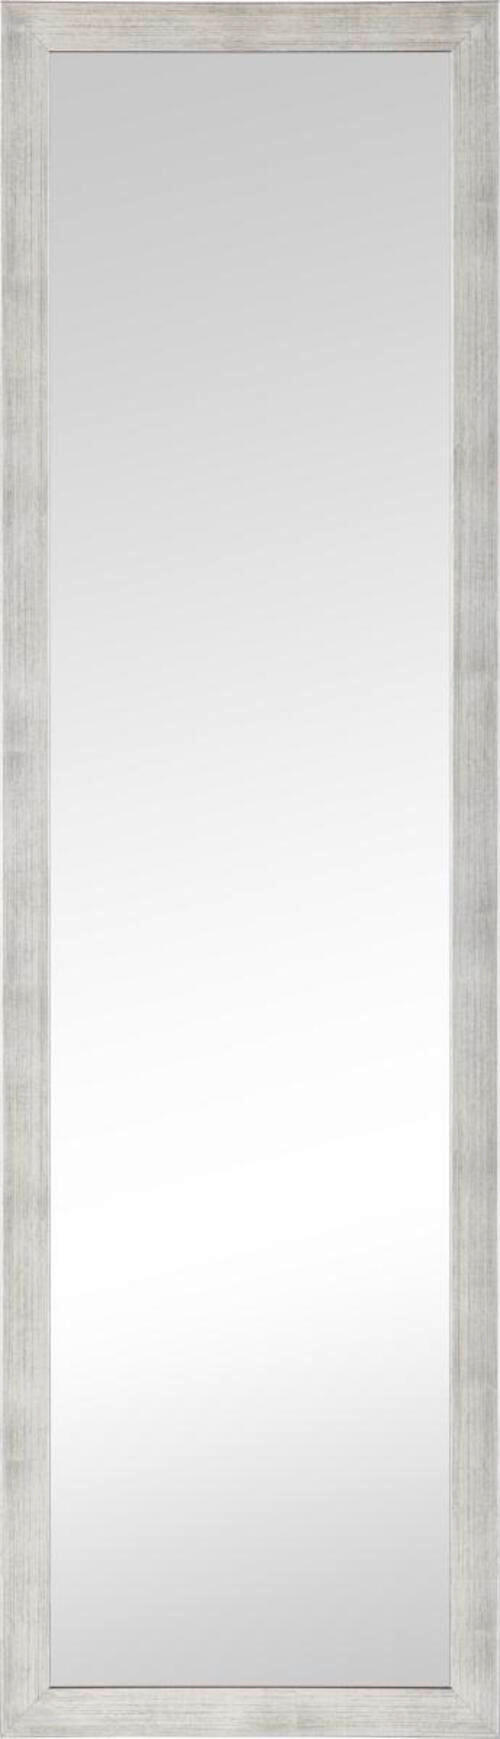 STENSKO OGLEDALO, 36/126/2,5 cm steklo, leseni material  - srebrne barve, Design, steklo/leseni material (36/126/2,5cm) - Carryhome